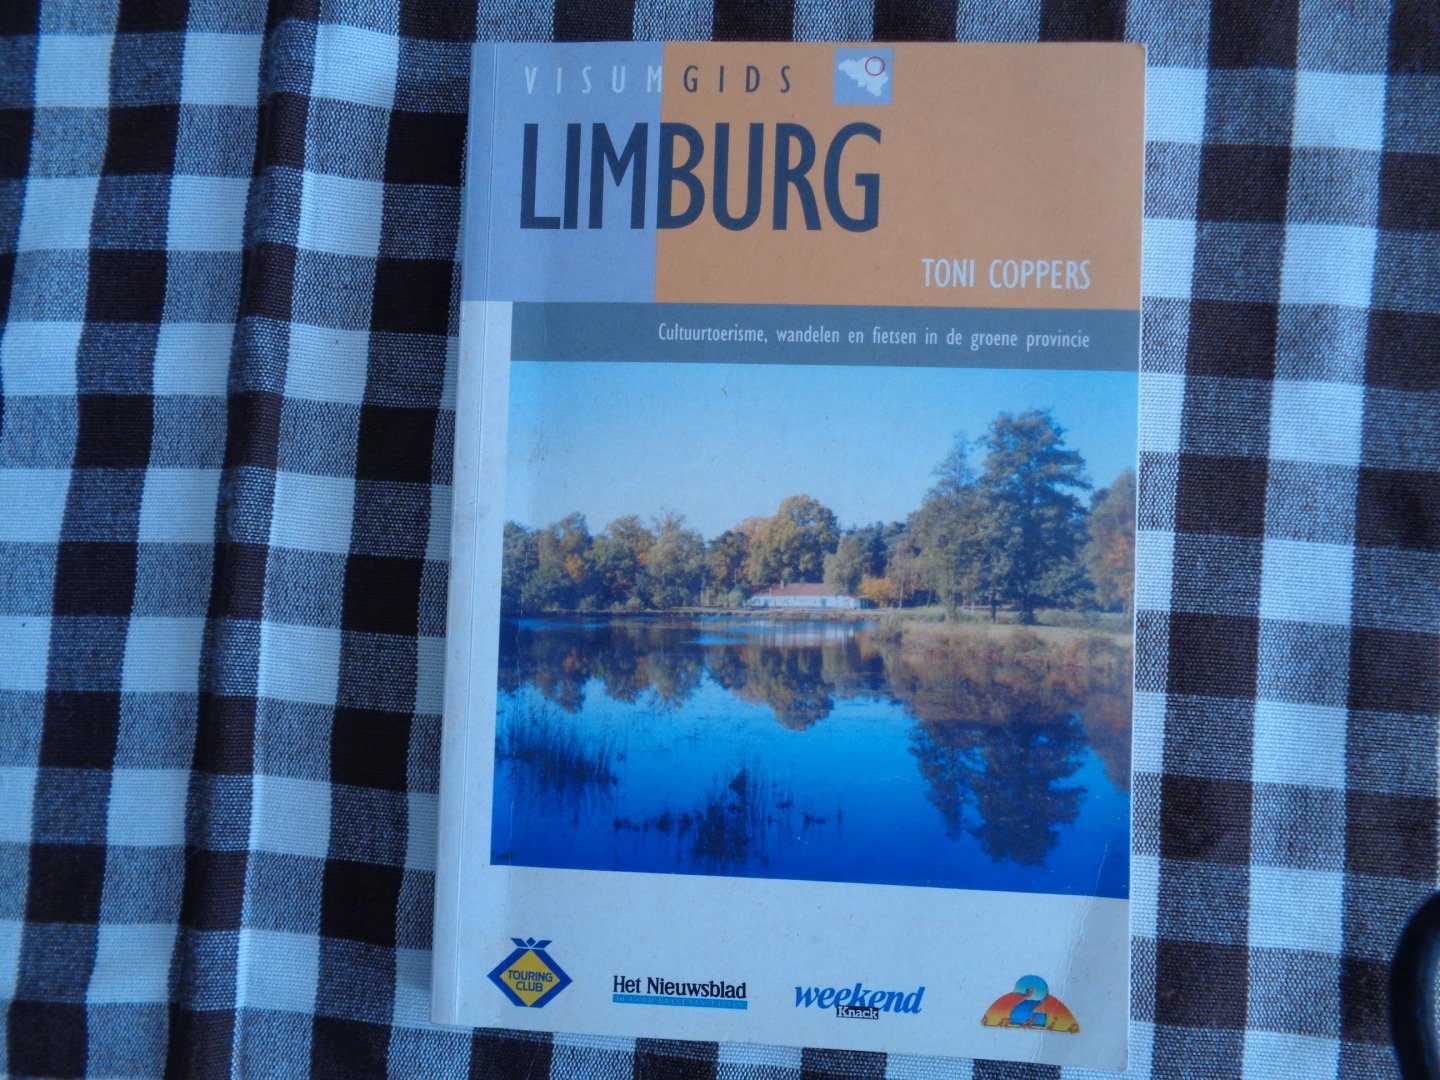 toni coppers - Limburg -cultuurtoerisme-wandelen en fietsen in de groene provincie